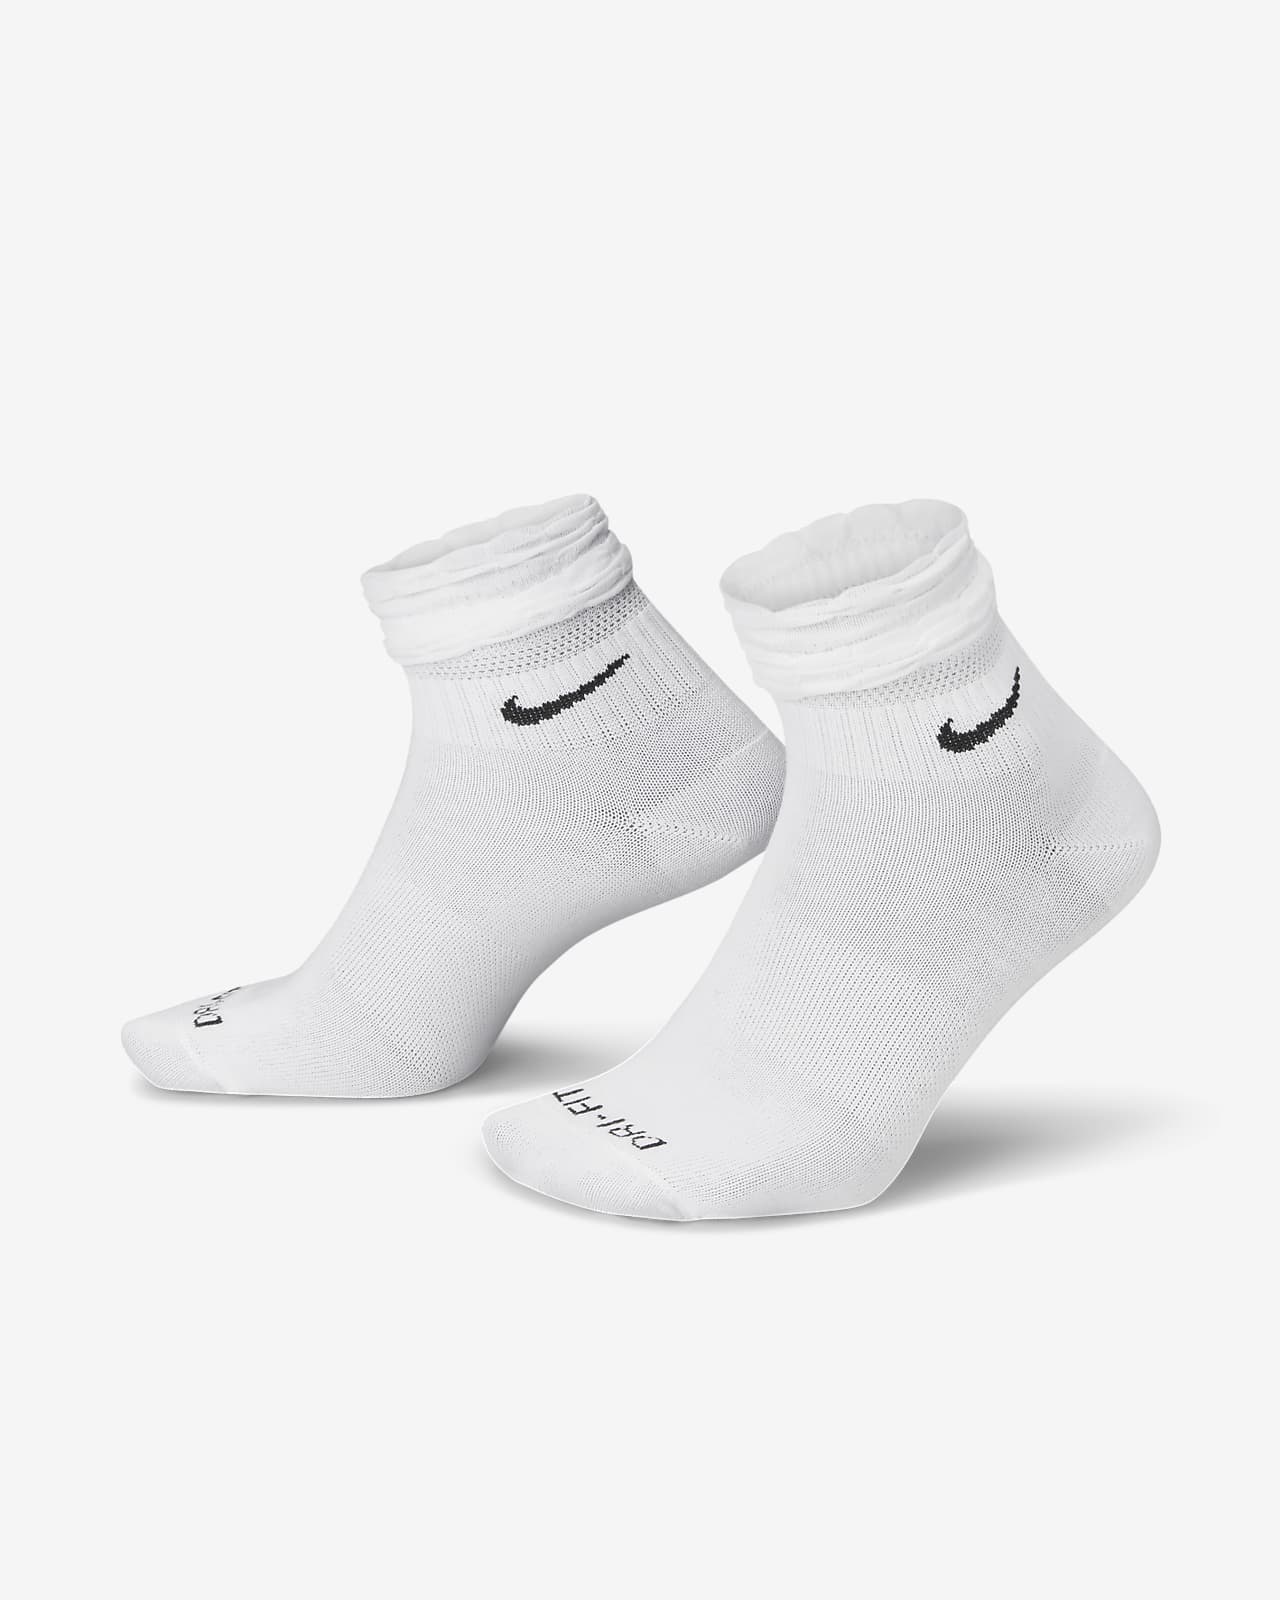 Nike Everyday Training Ankle Socks